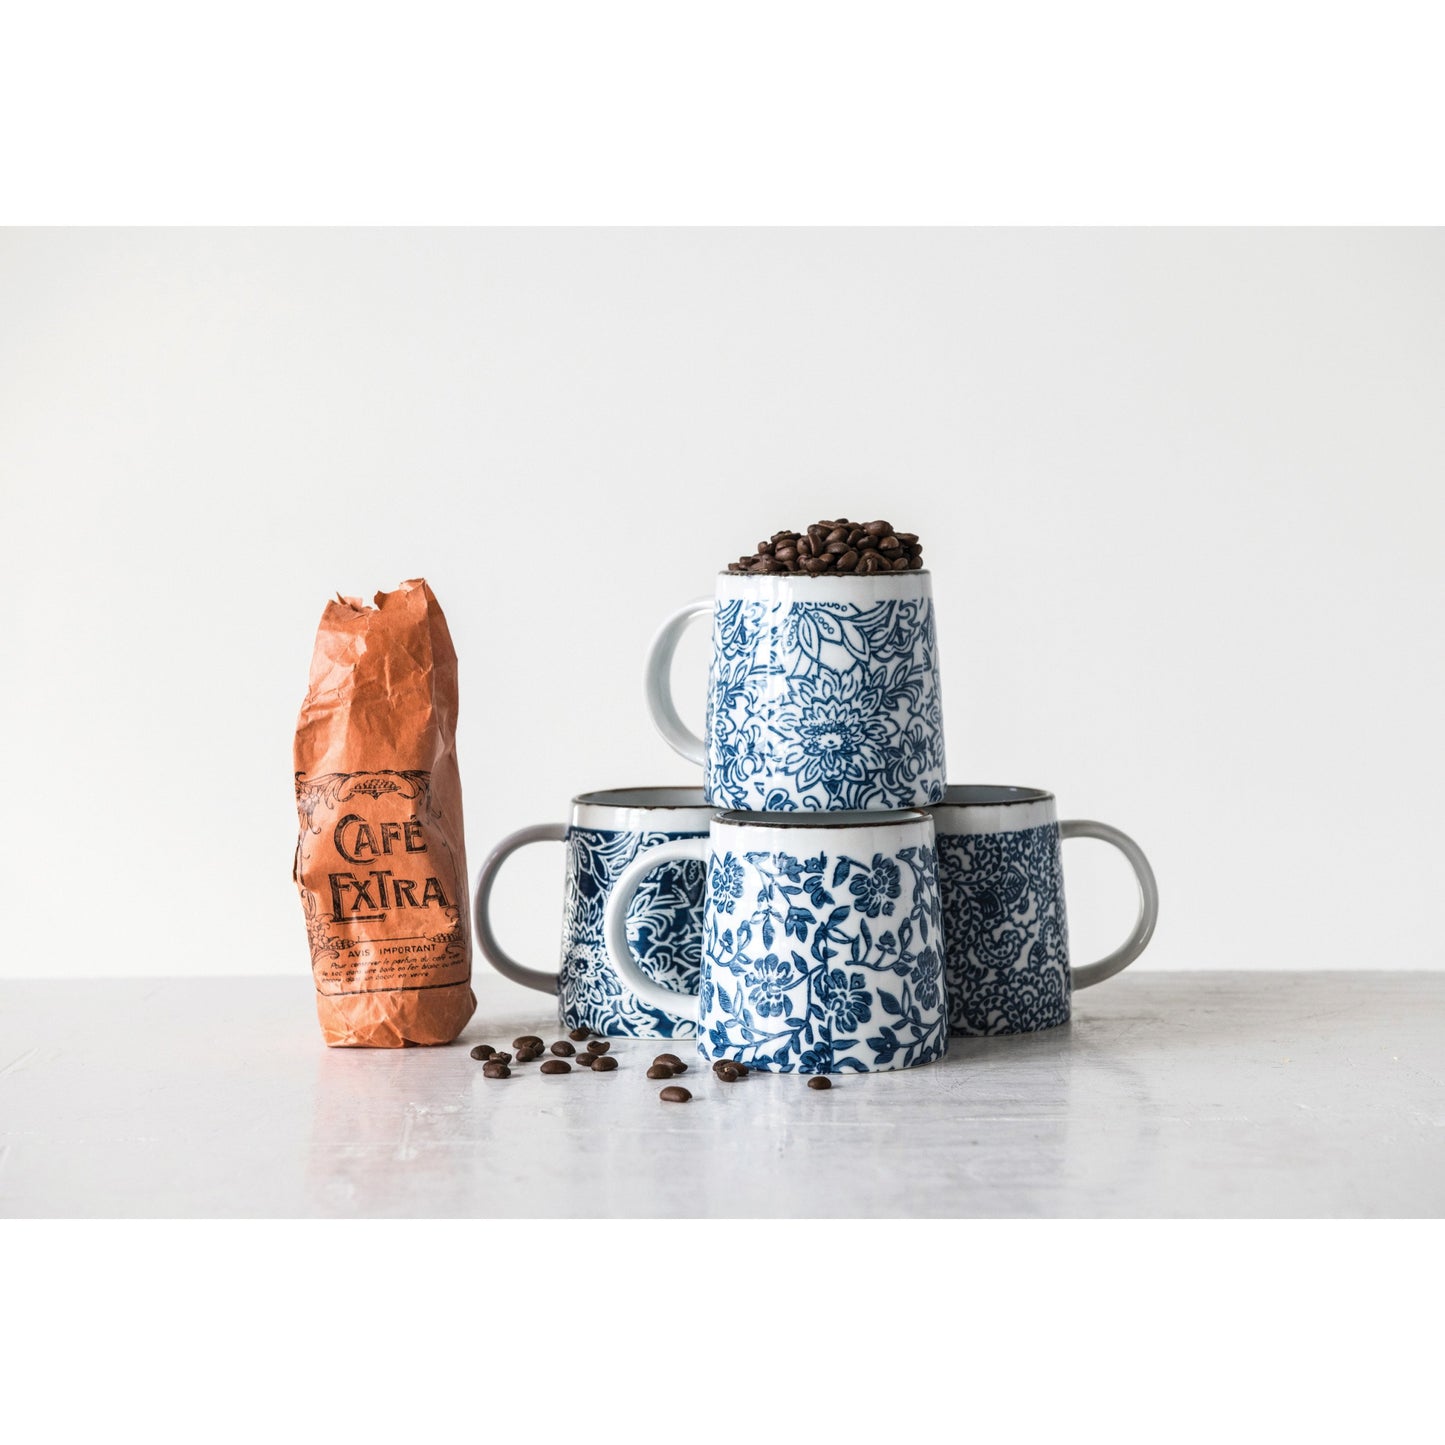 12 oz Blue and White Stoneware Mug